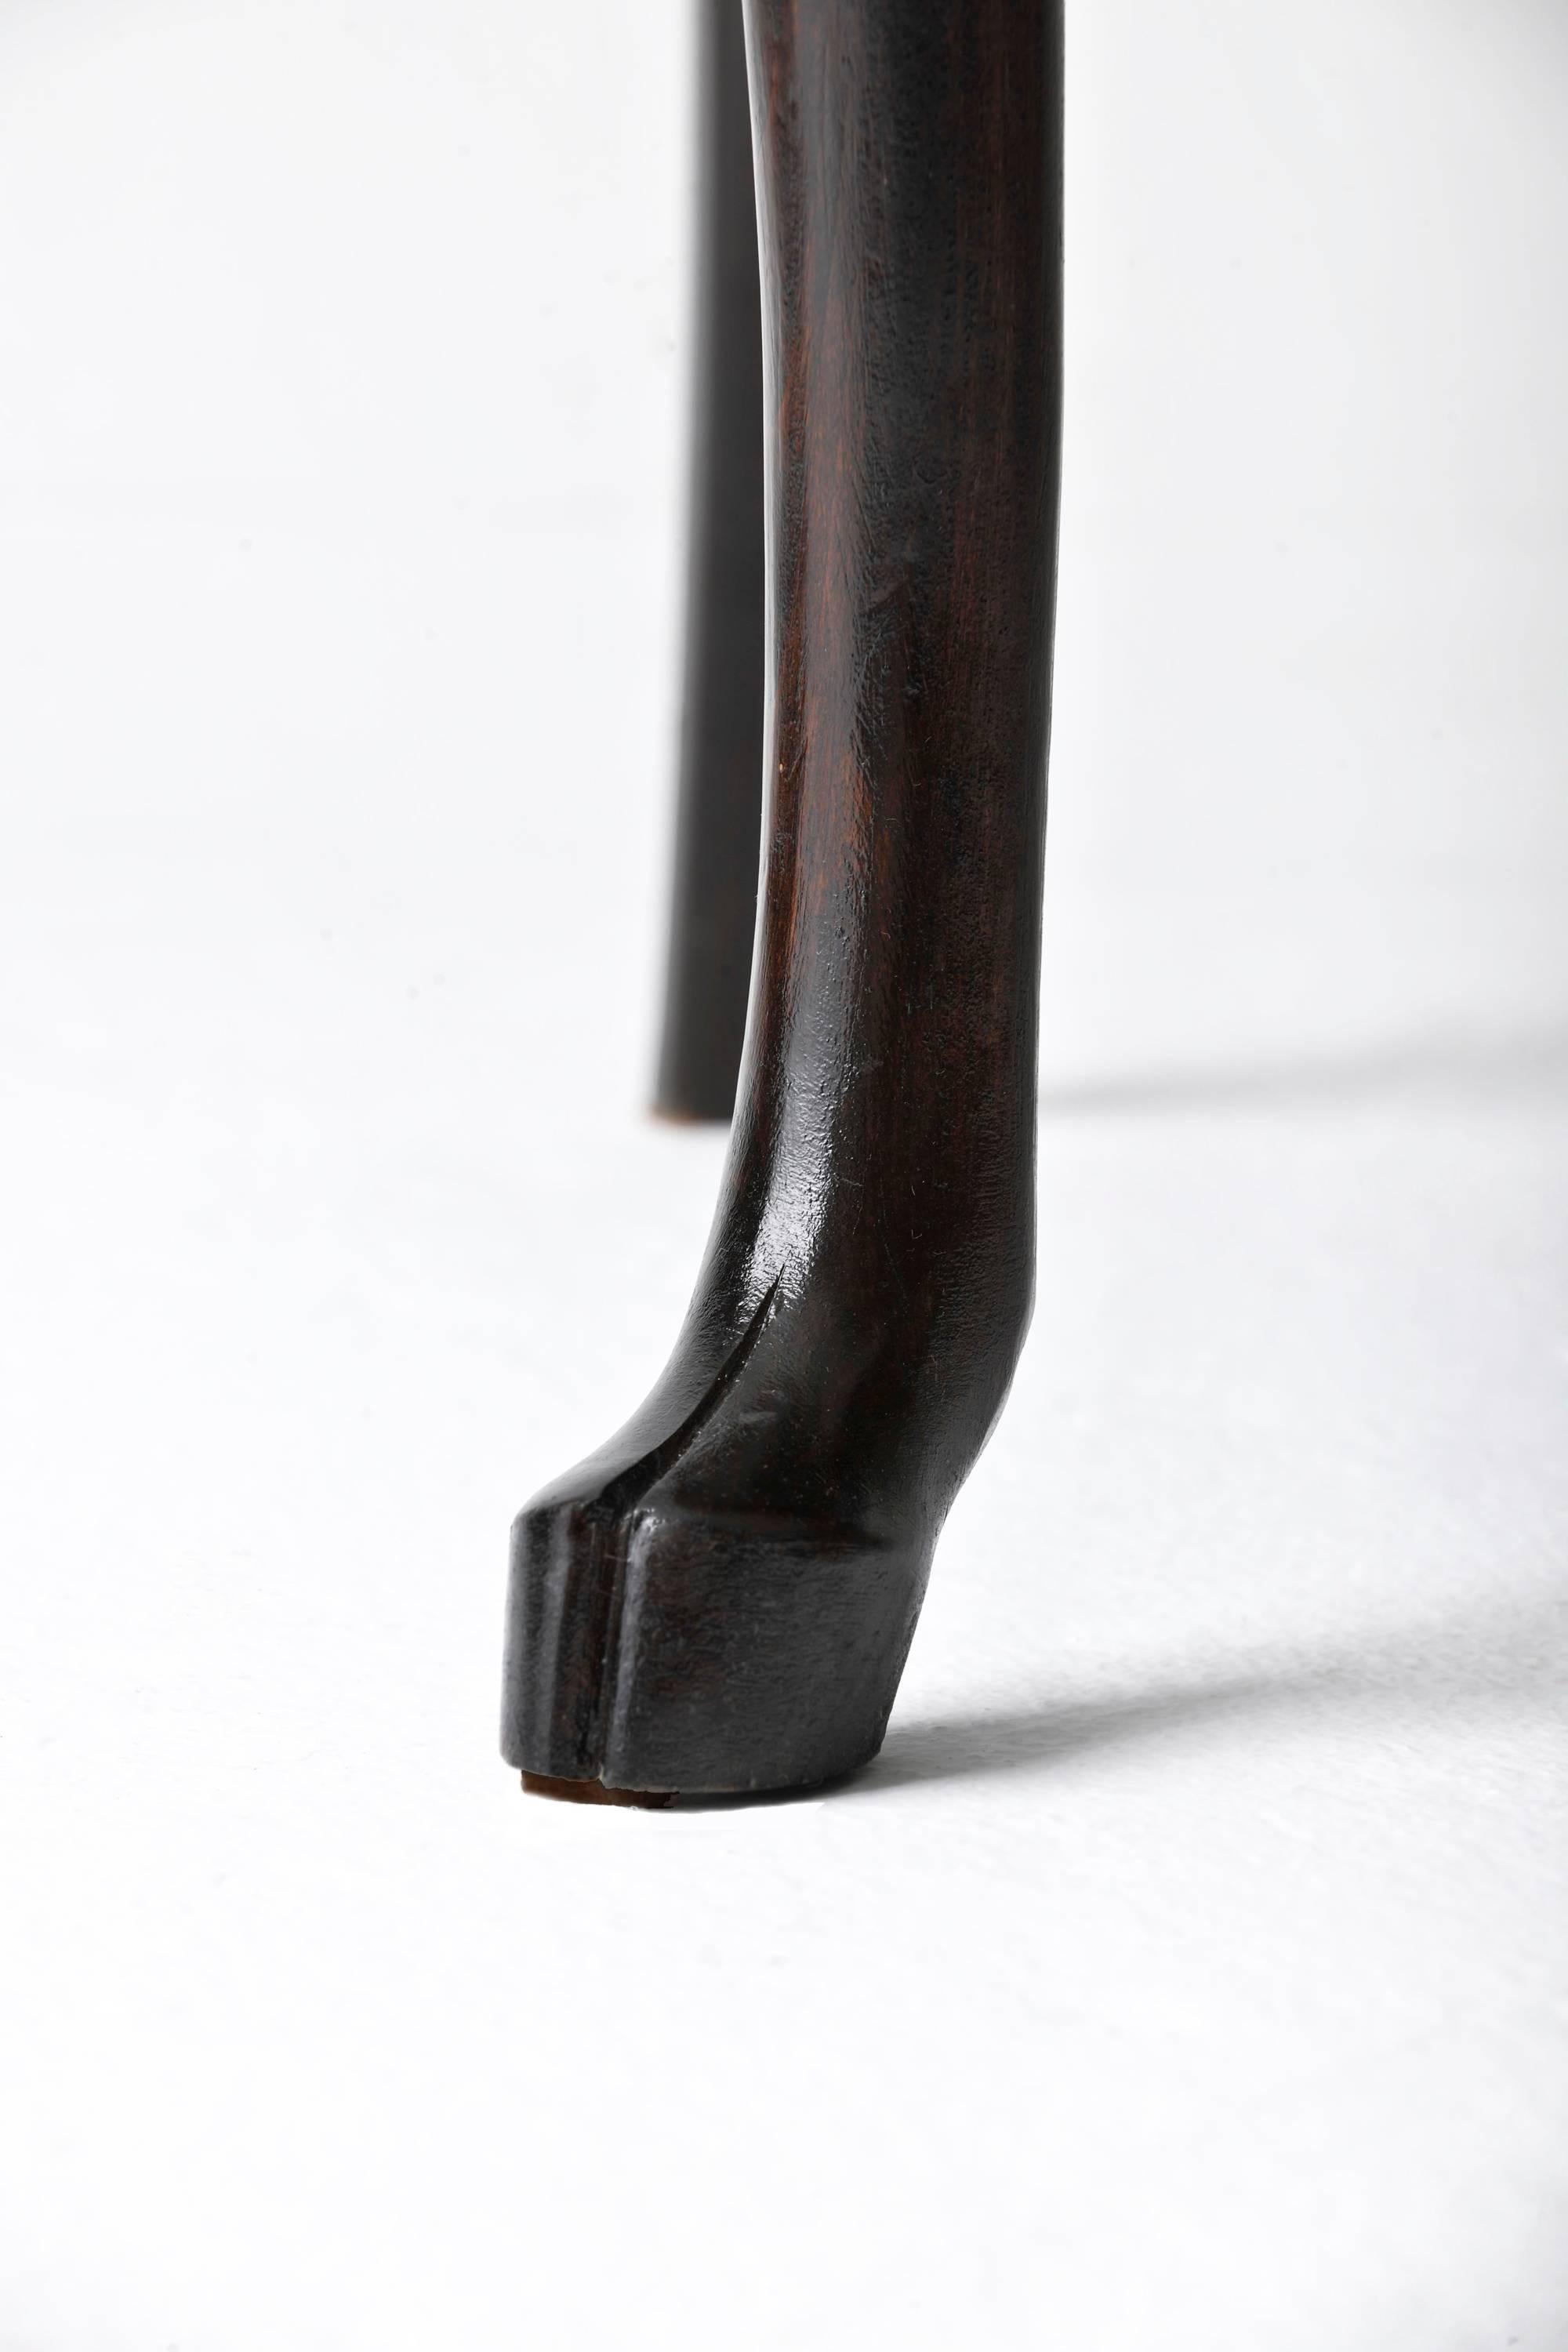 Fait main Fauteuil hybride n° 1 du 21e siècle avec bois de cervidé sculpté à la main et cuir brun en vente